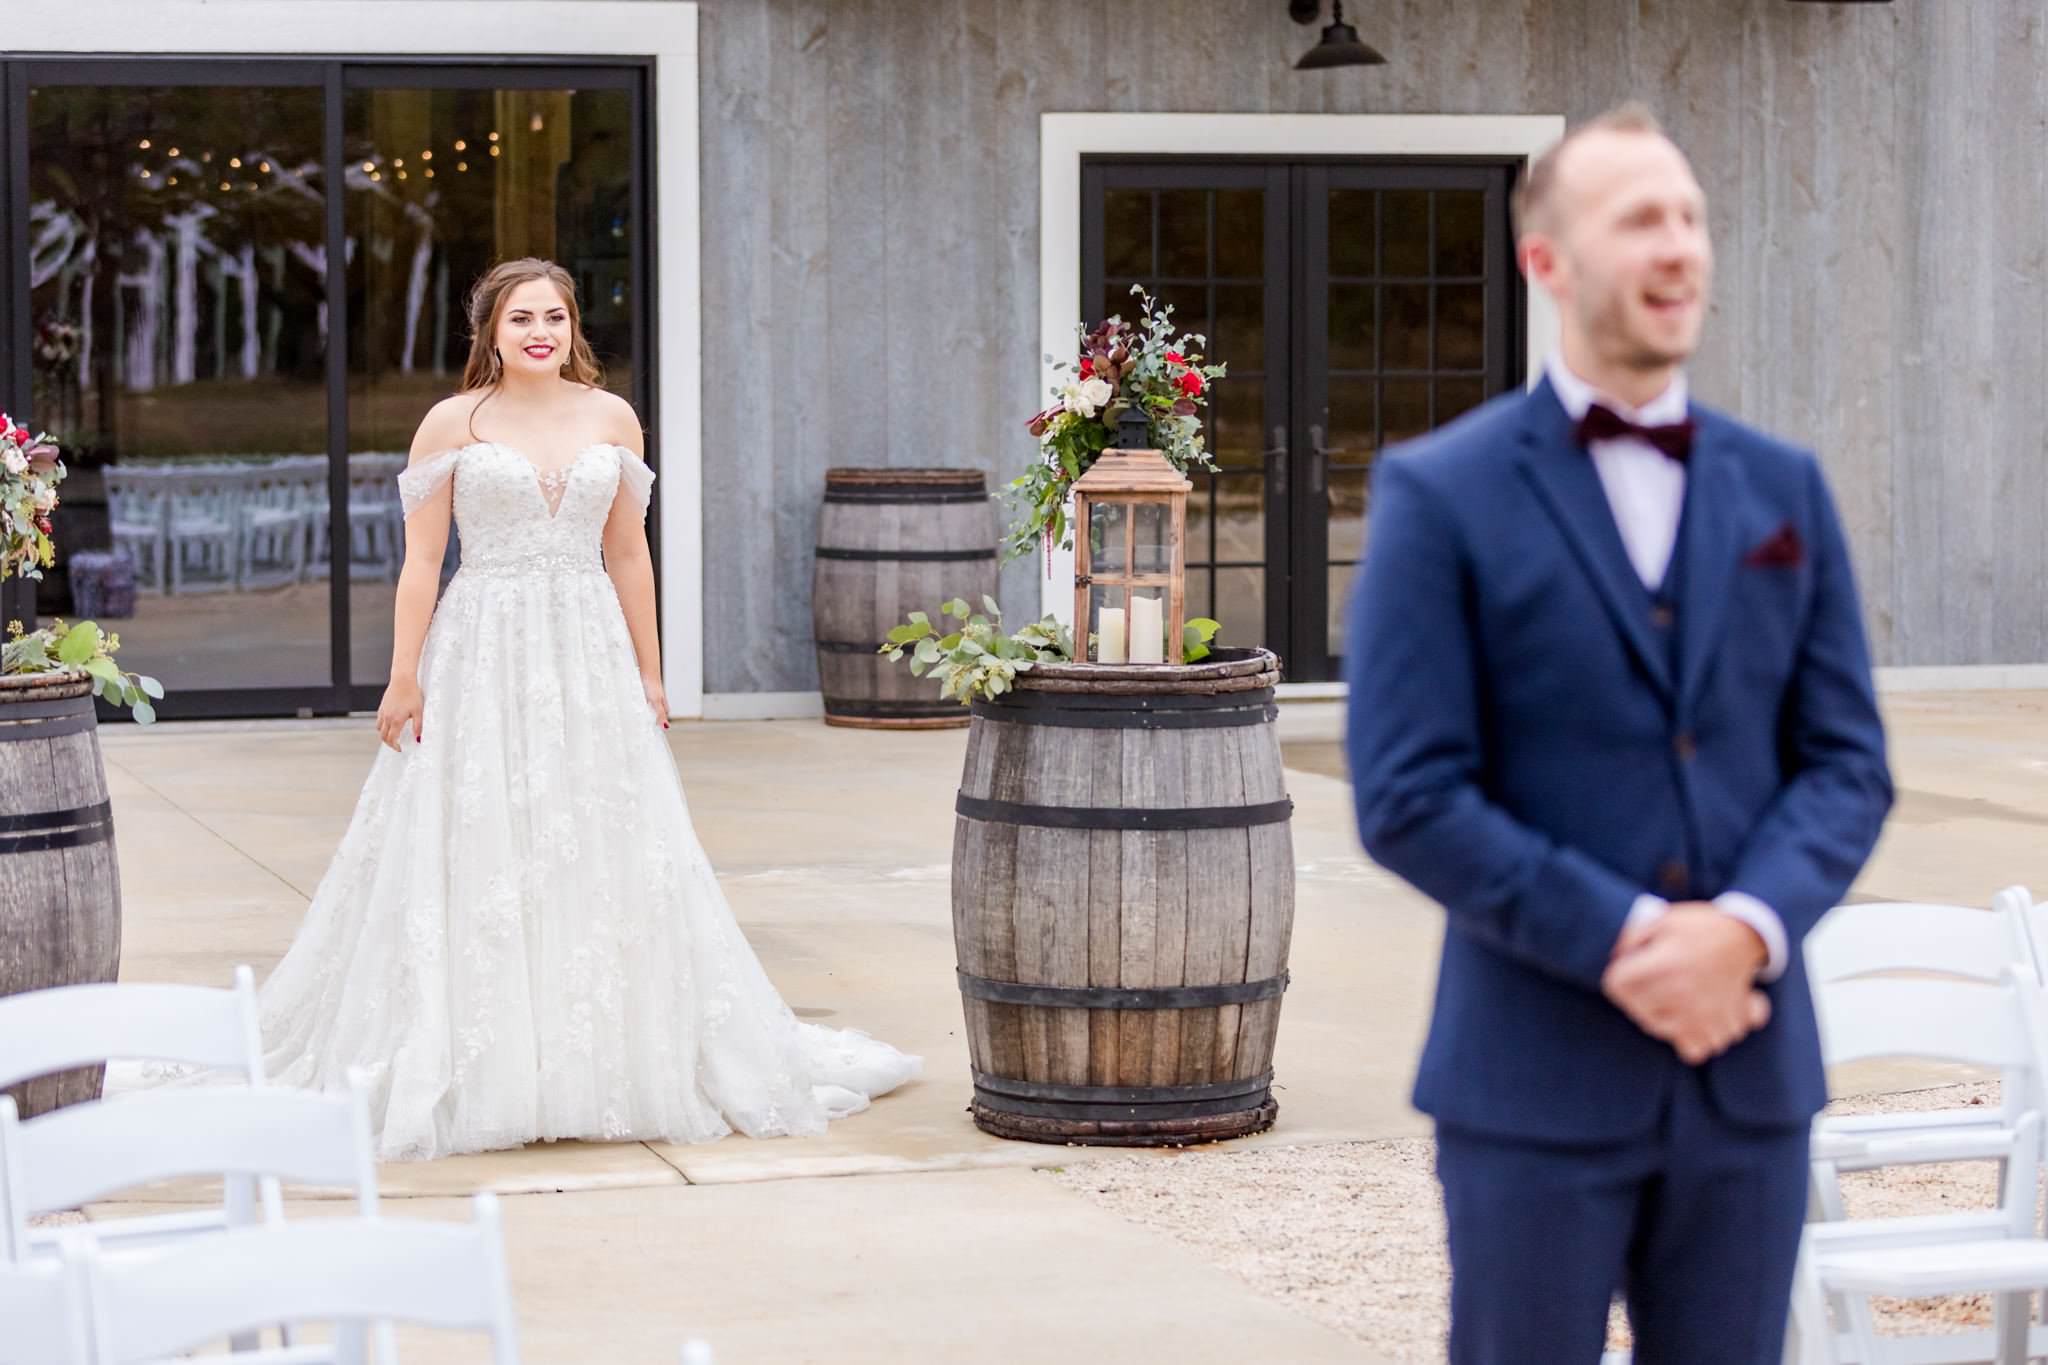 A Cabernet & Blush Wedding at The Barn at Swallows Eve in Fredericksburg, TX by Dawn Elizabeth Studios, Fredericksburg Wedding Photographer